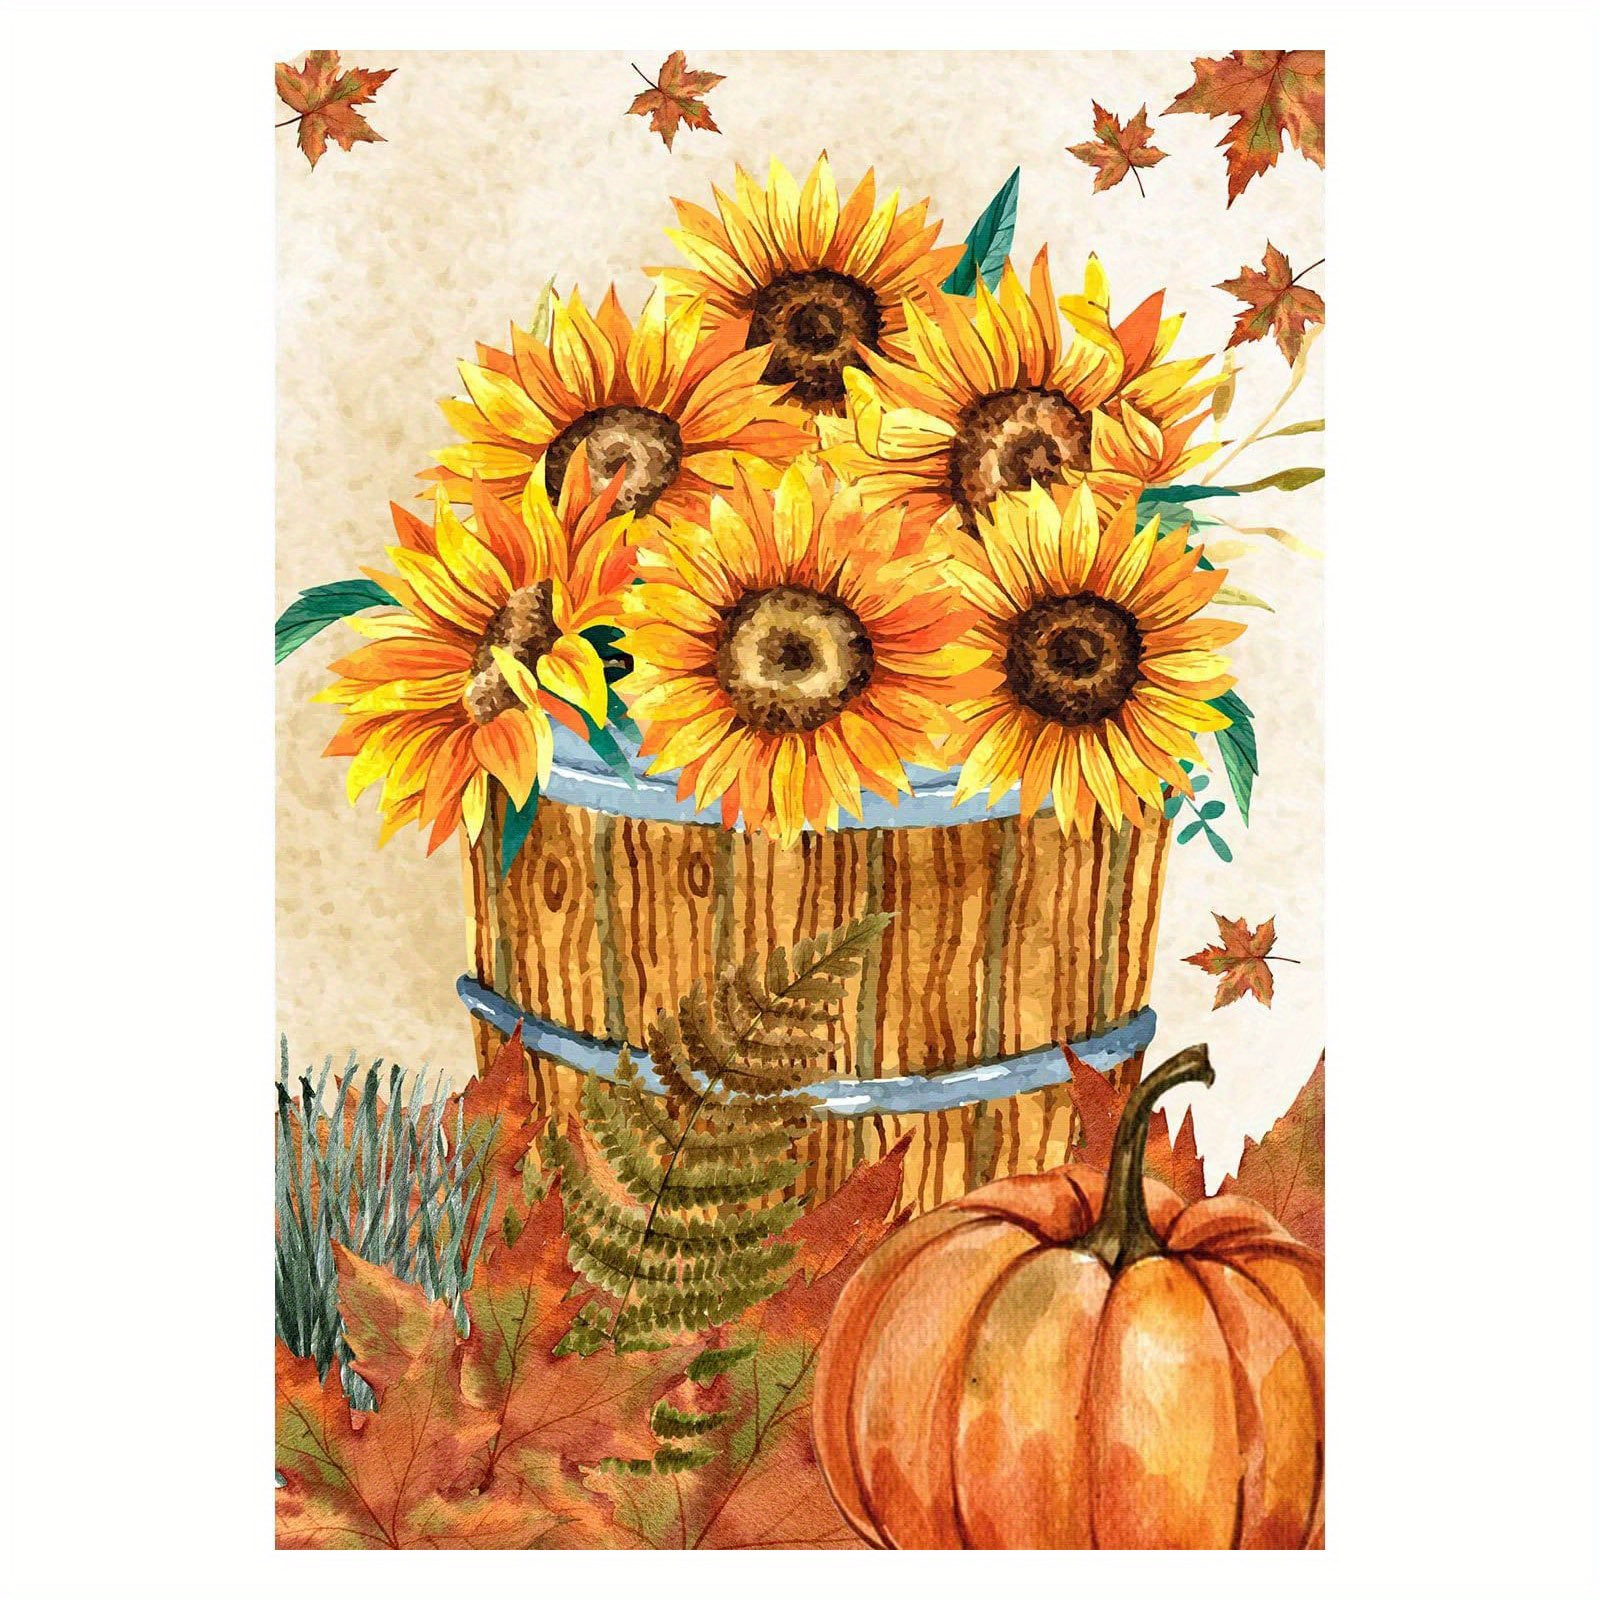  Diamond Painting Kits - 5D Autumn Pumpkin Sunflower